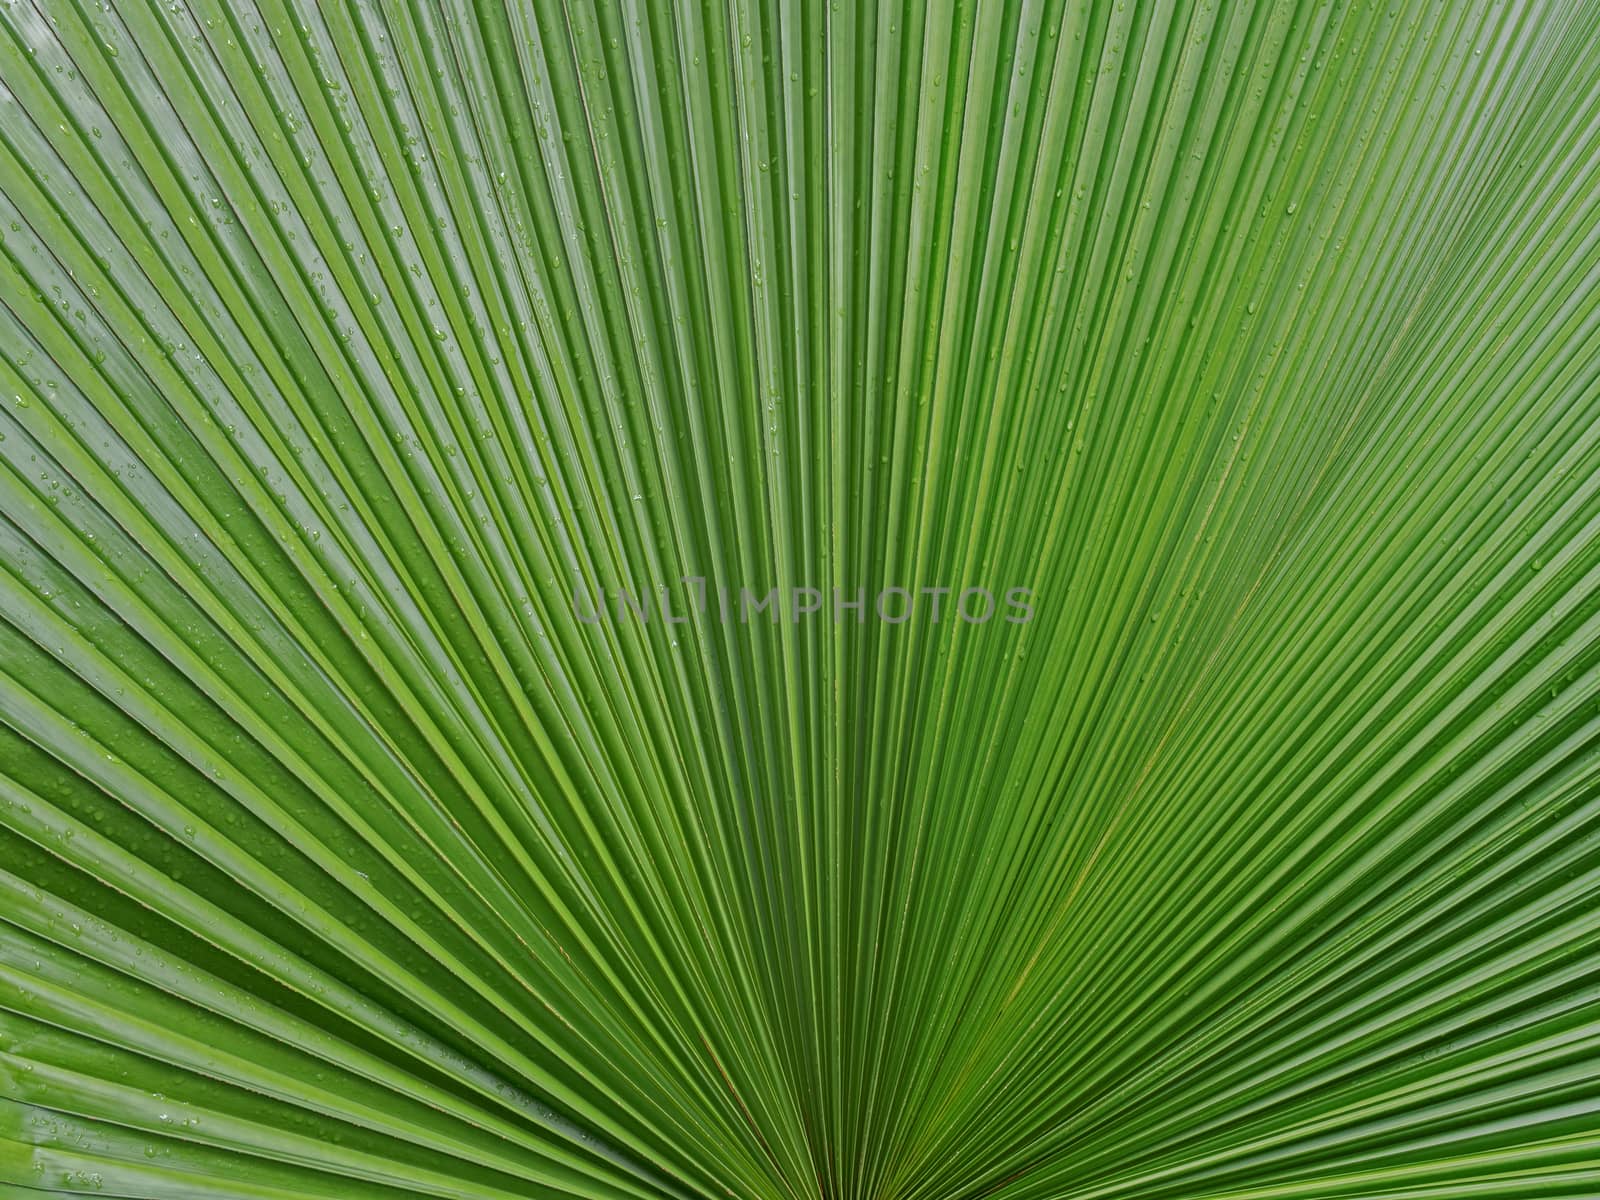 palm leaf texture background by zkruger